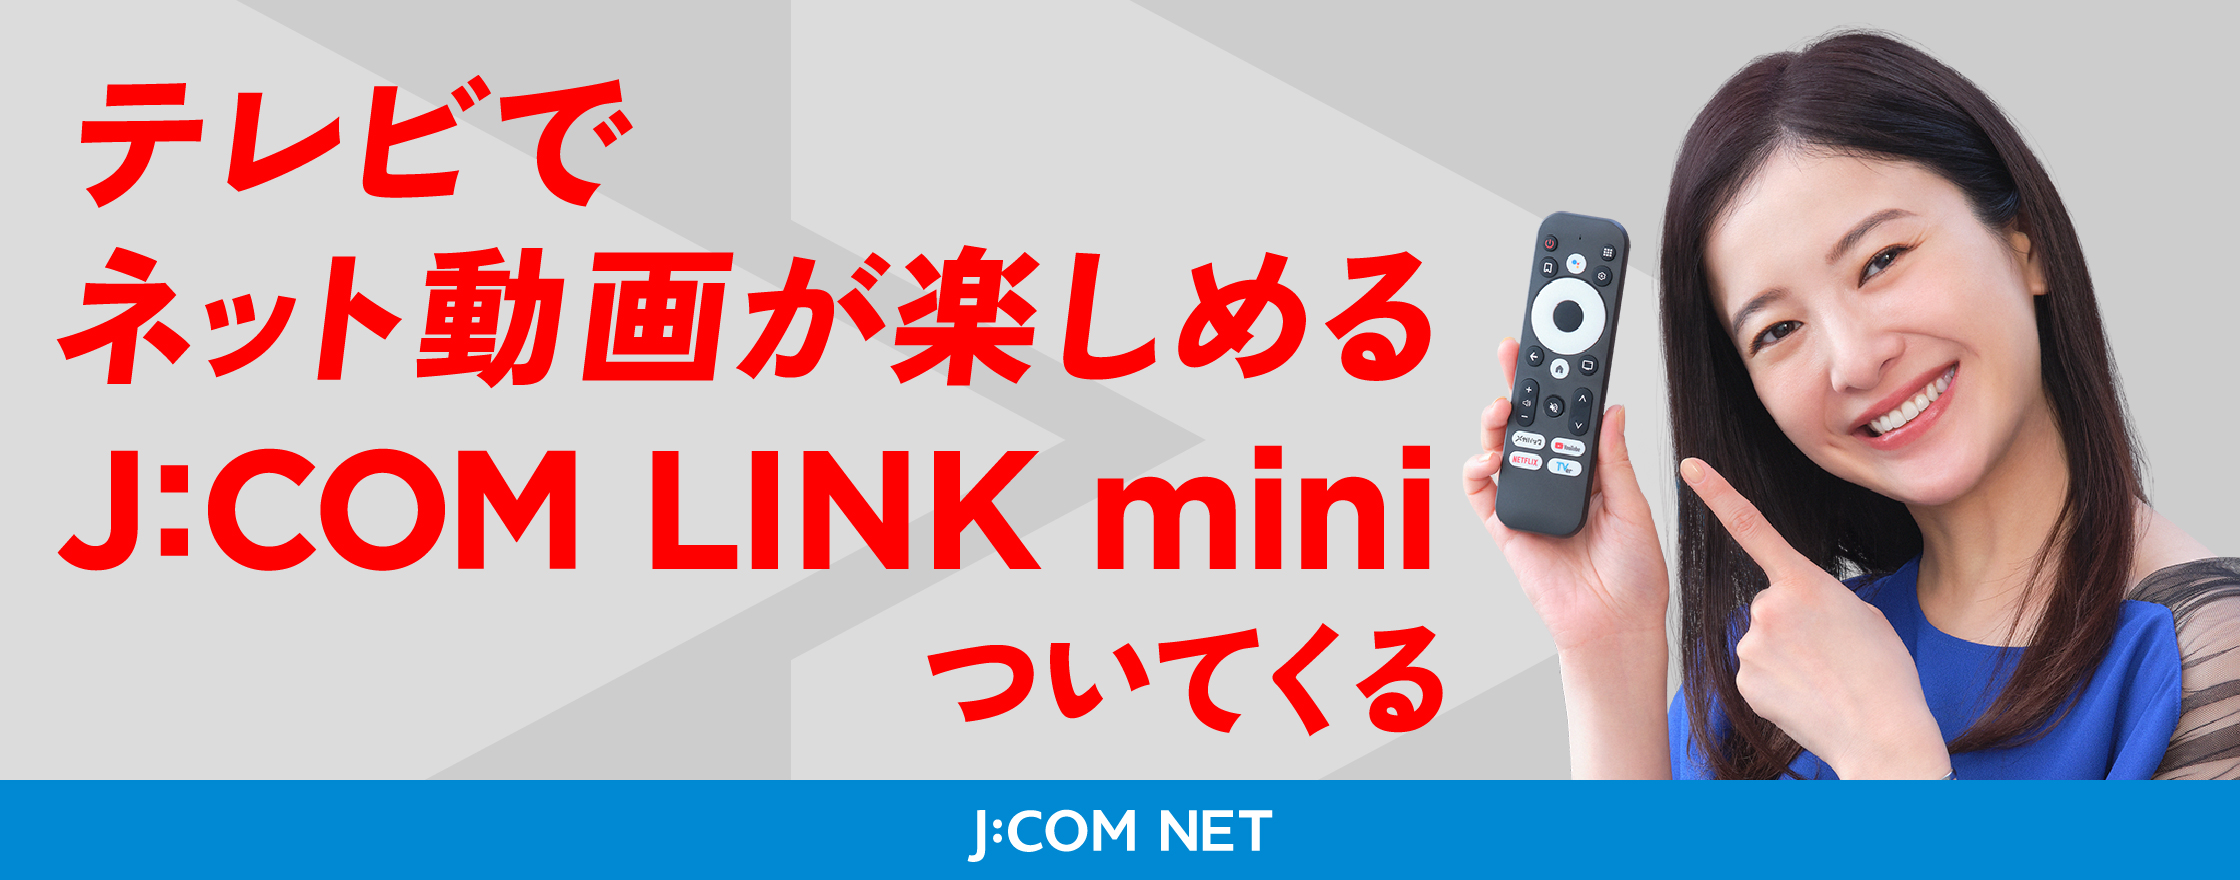 配备J:COM LINK mini可让您在电视上欣赏在线视频。